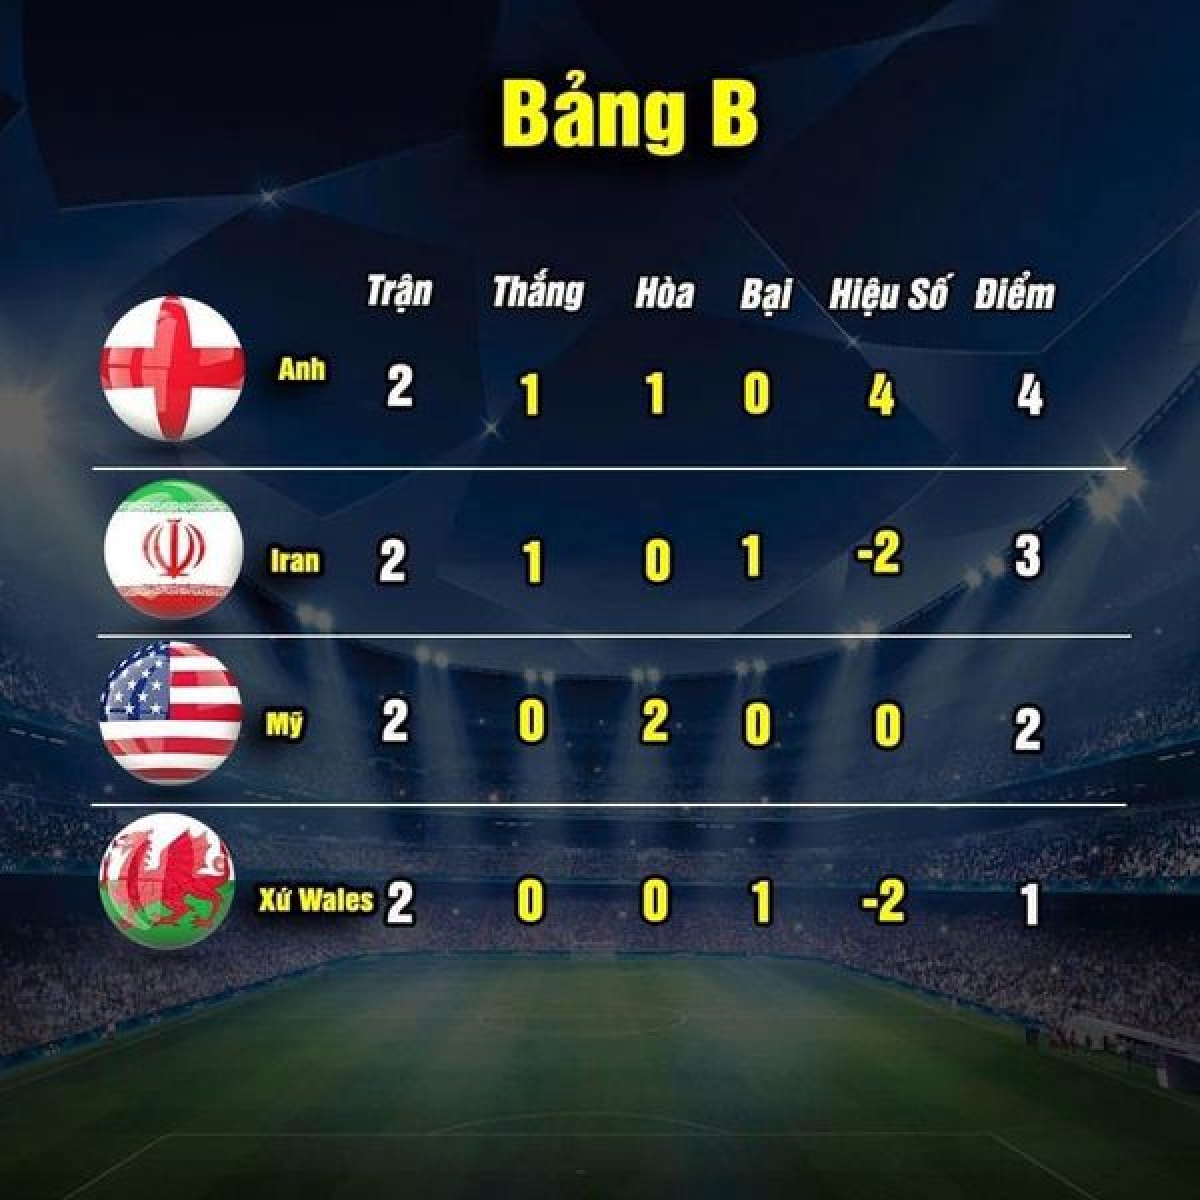 Cục diện bảng B sau hai lượt trận (ảnh: Thethao.vn) 